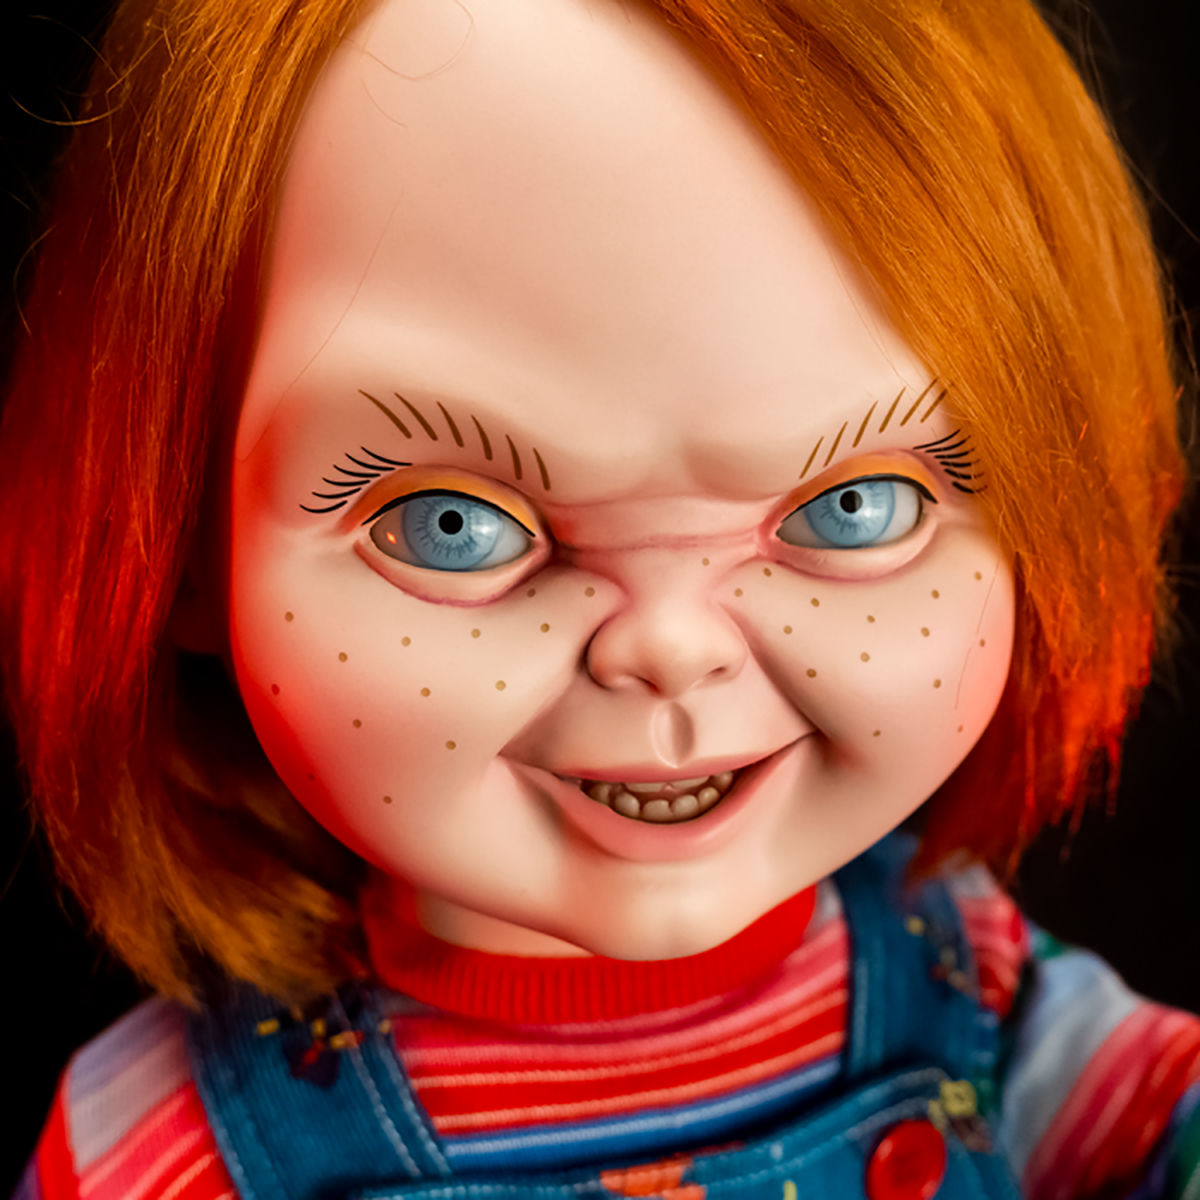 Ce site commercialise une réplique parfaite de la poupée tueuse Chucky